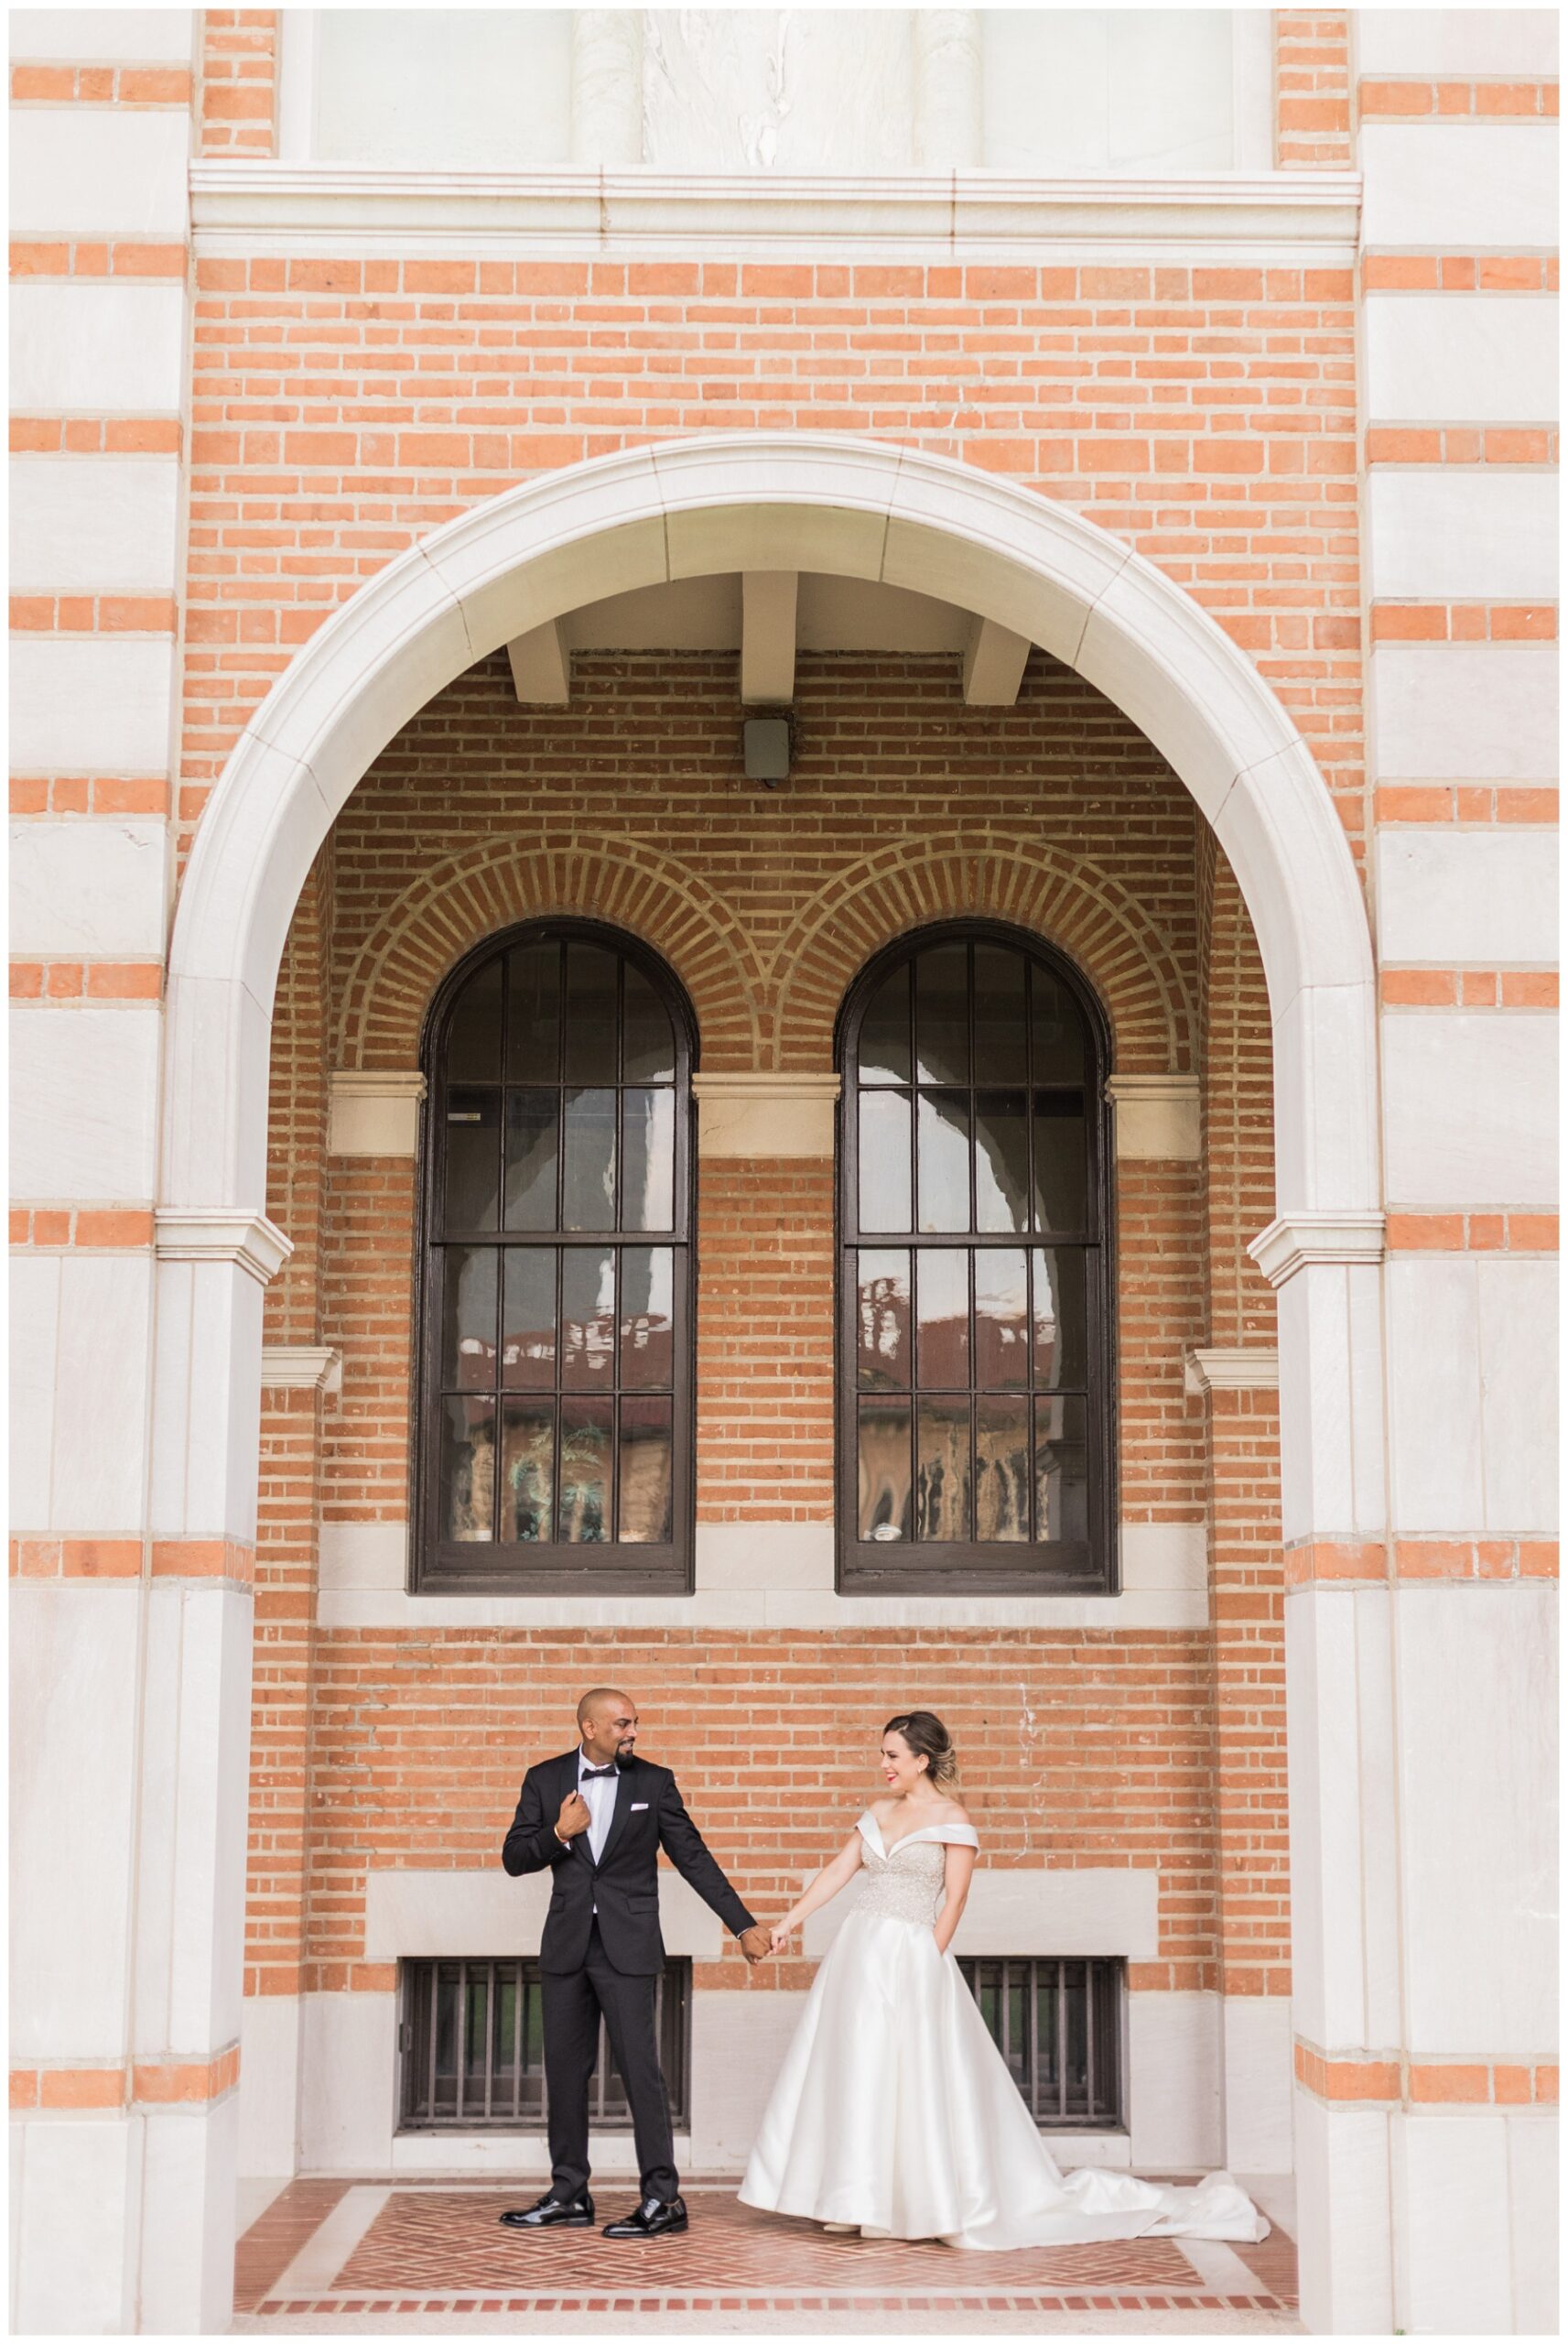 Rice University wedding photography